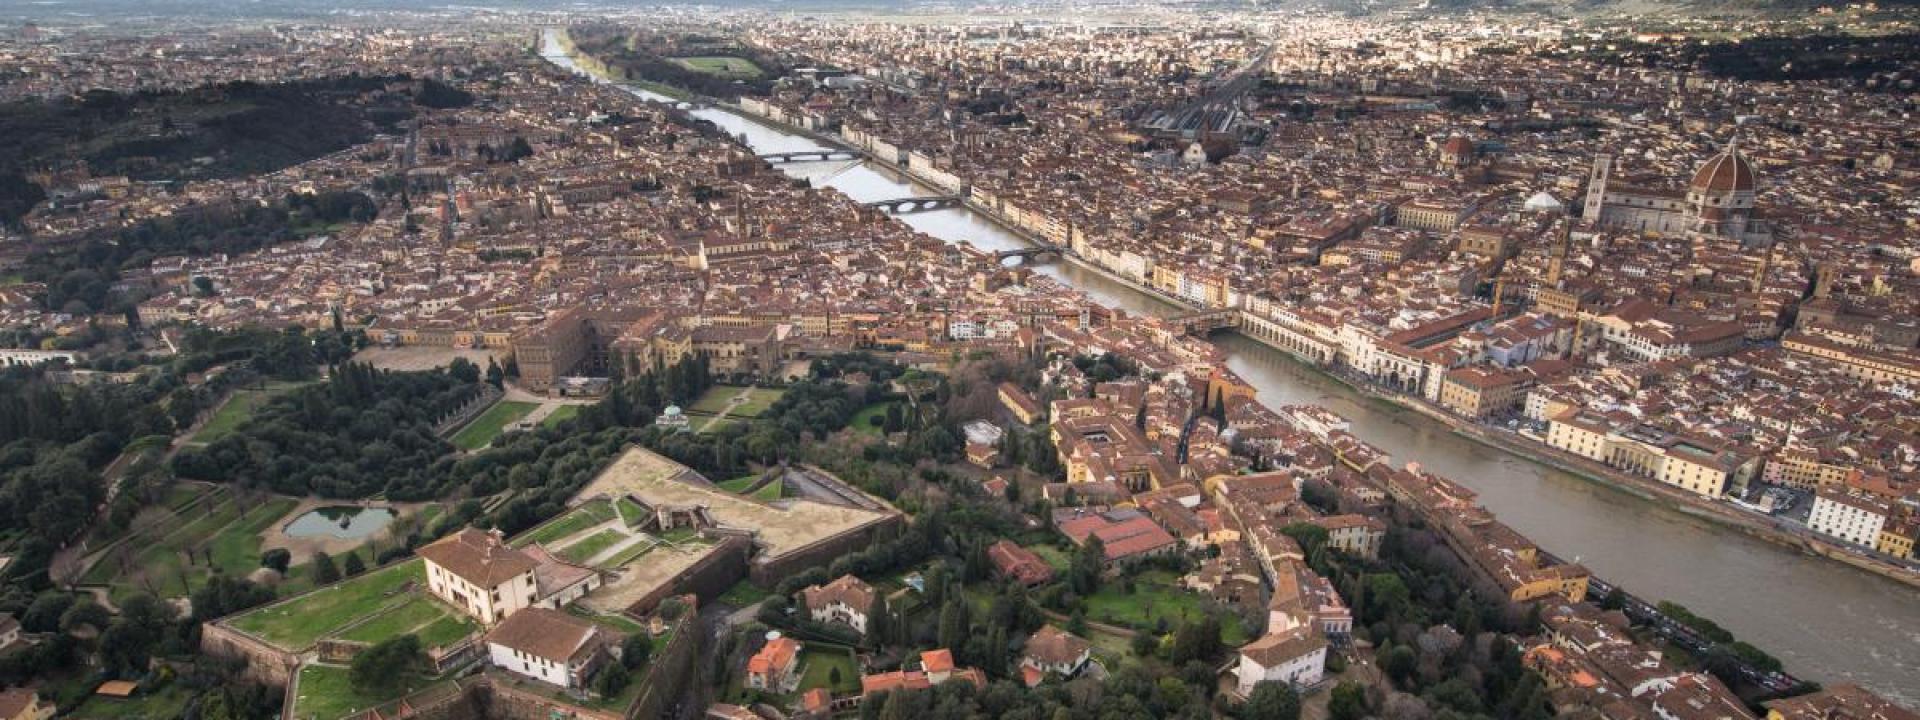 Les Quartiers de Florence